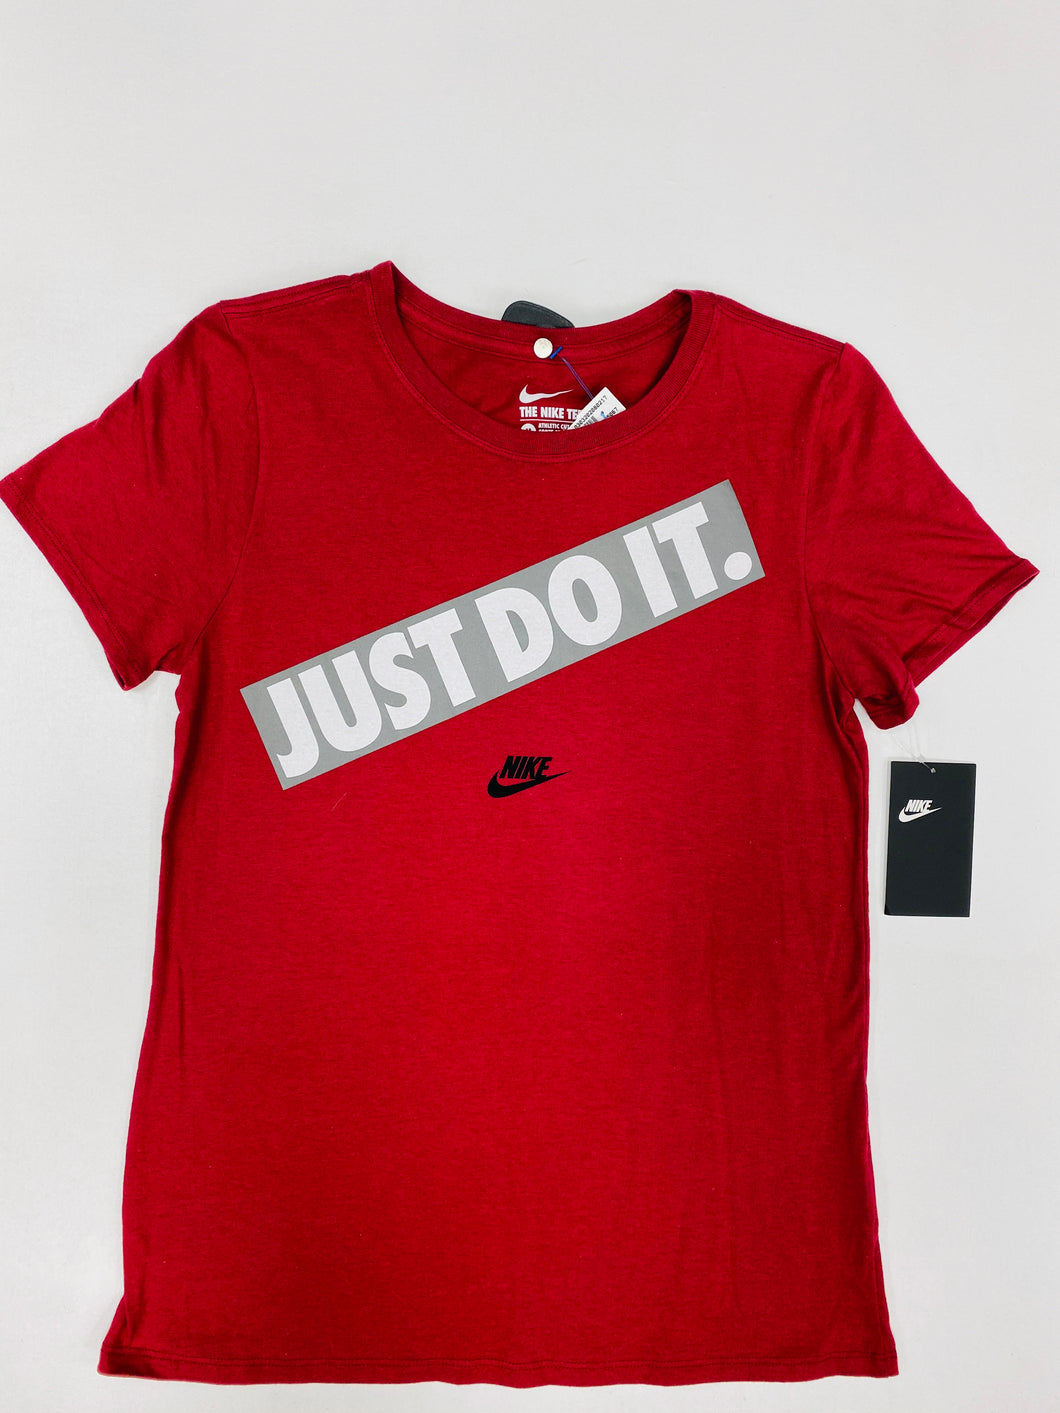 Nike Womens T-Shirt Medium-830F7B9D-3CA1-4BA1-B9CF-2820D2A82F46.jpeg